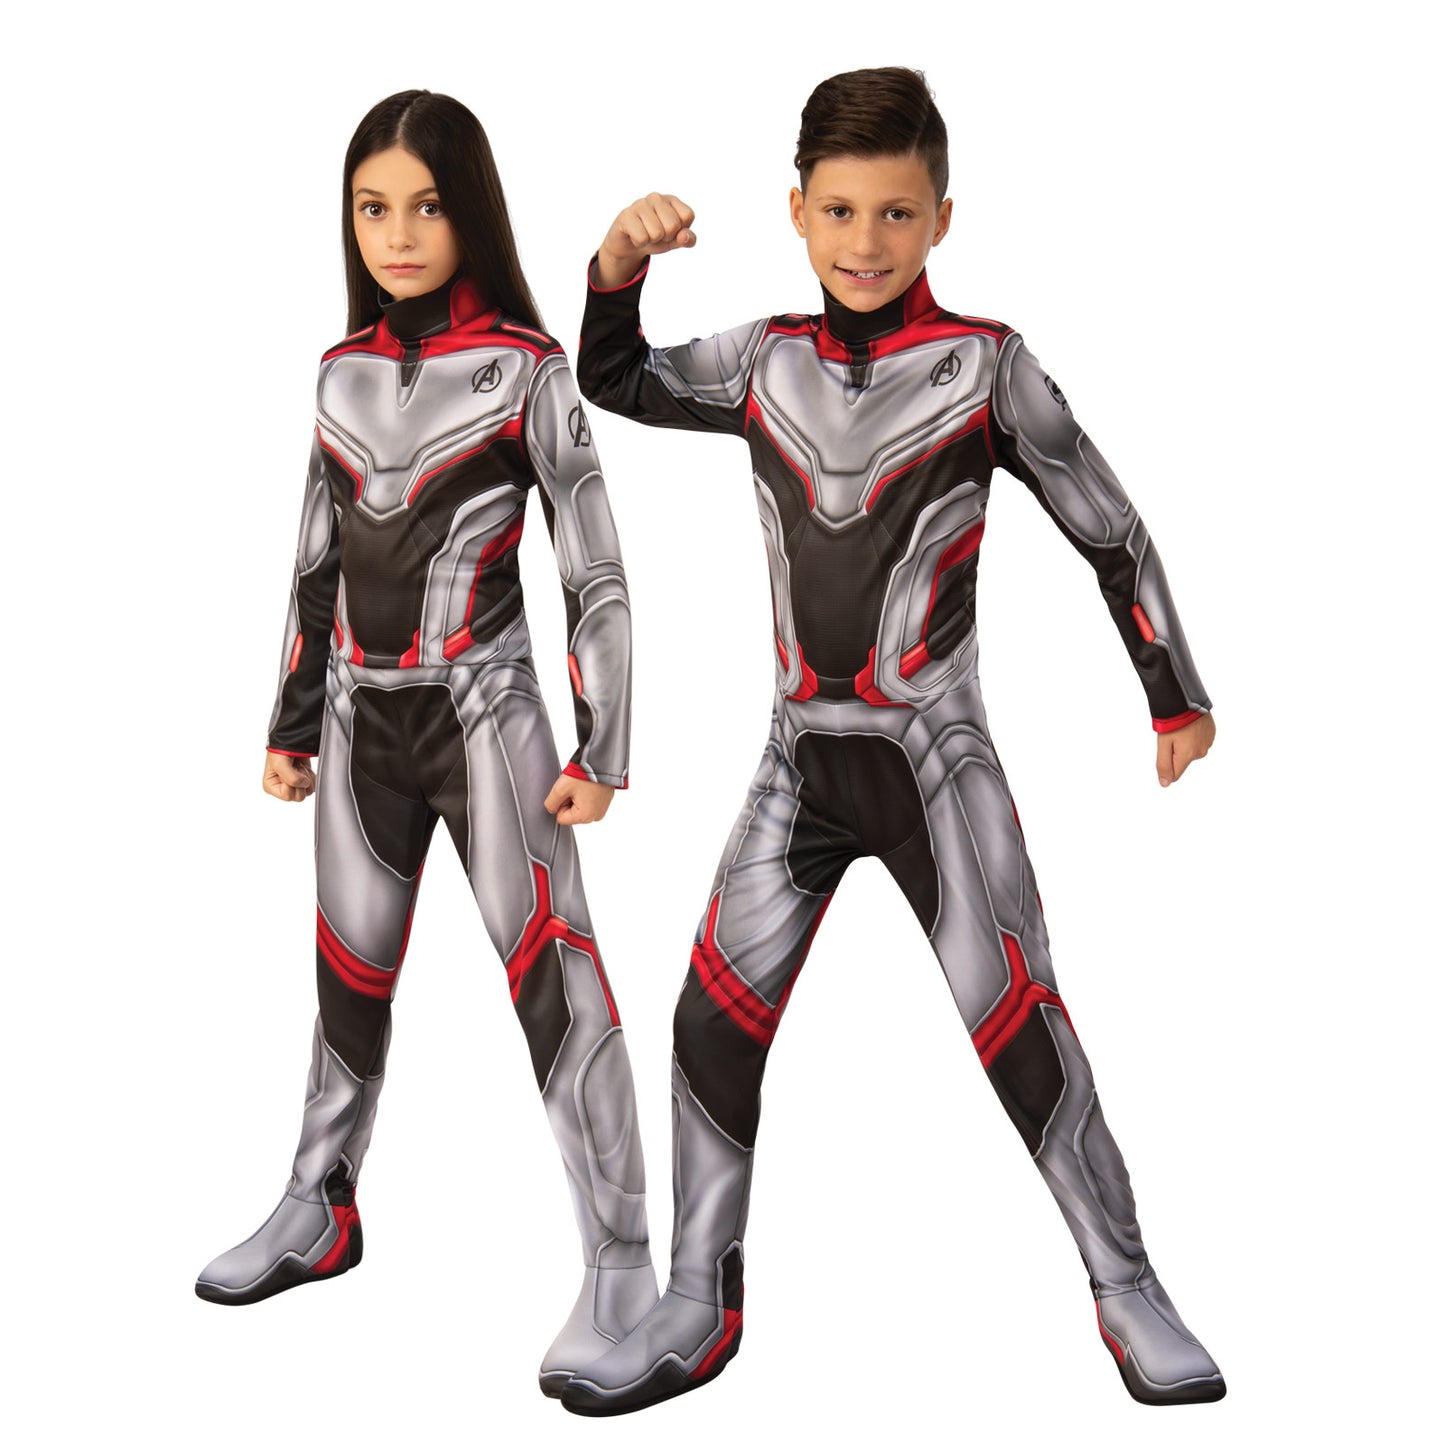 Avengers 4 Classic Unisex Team Child Costume Suit Licensed